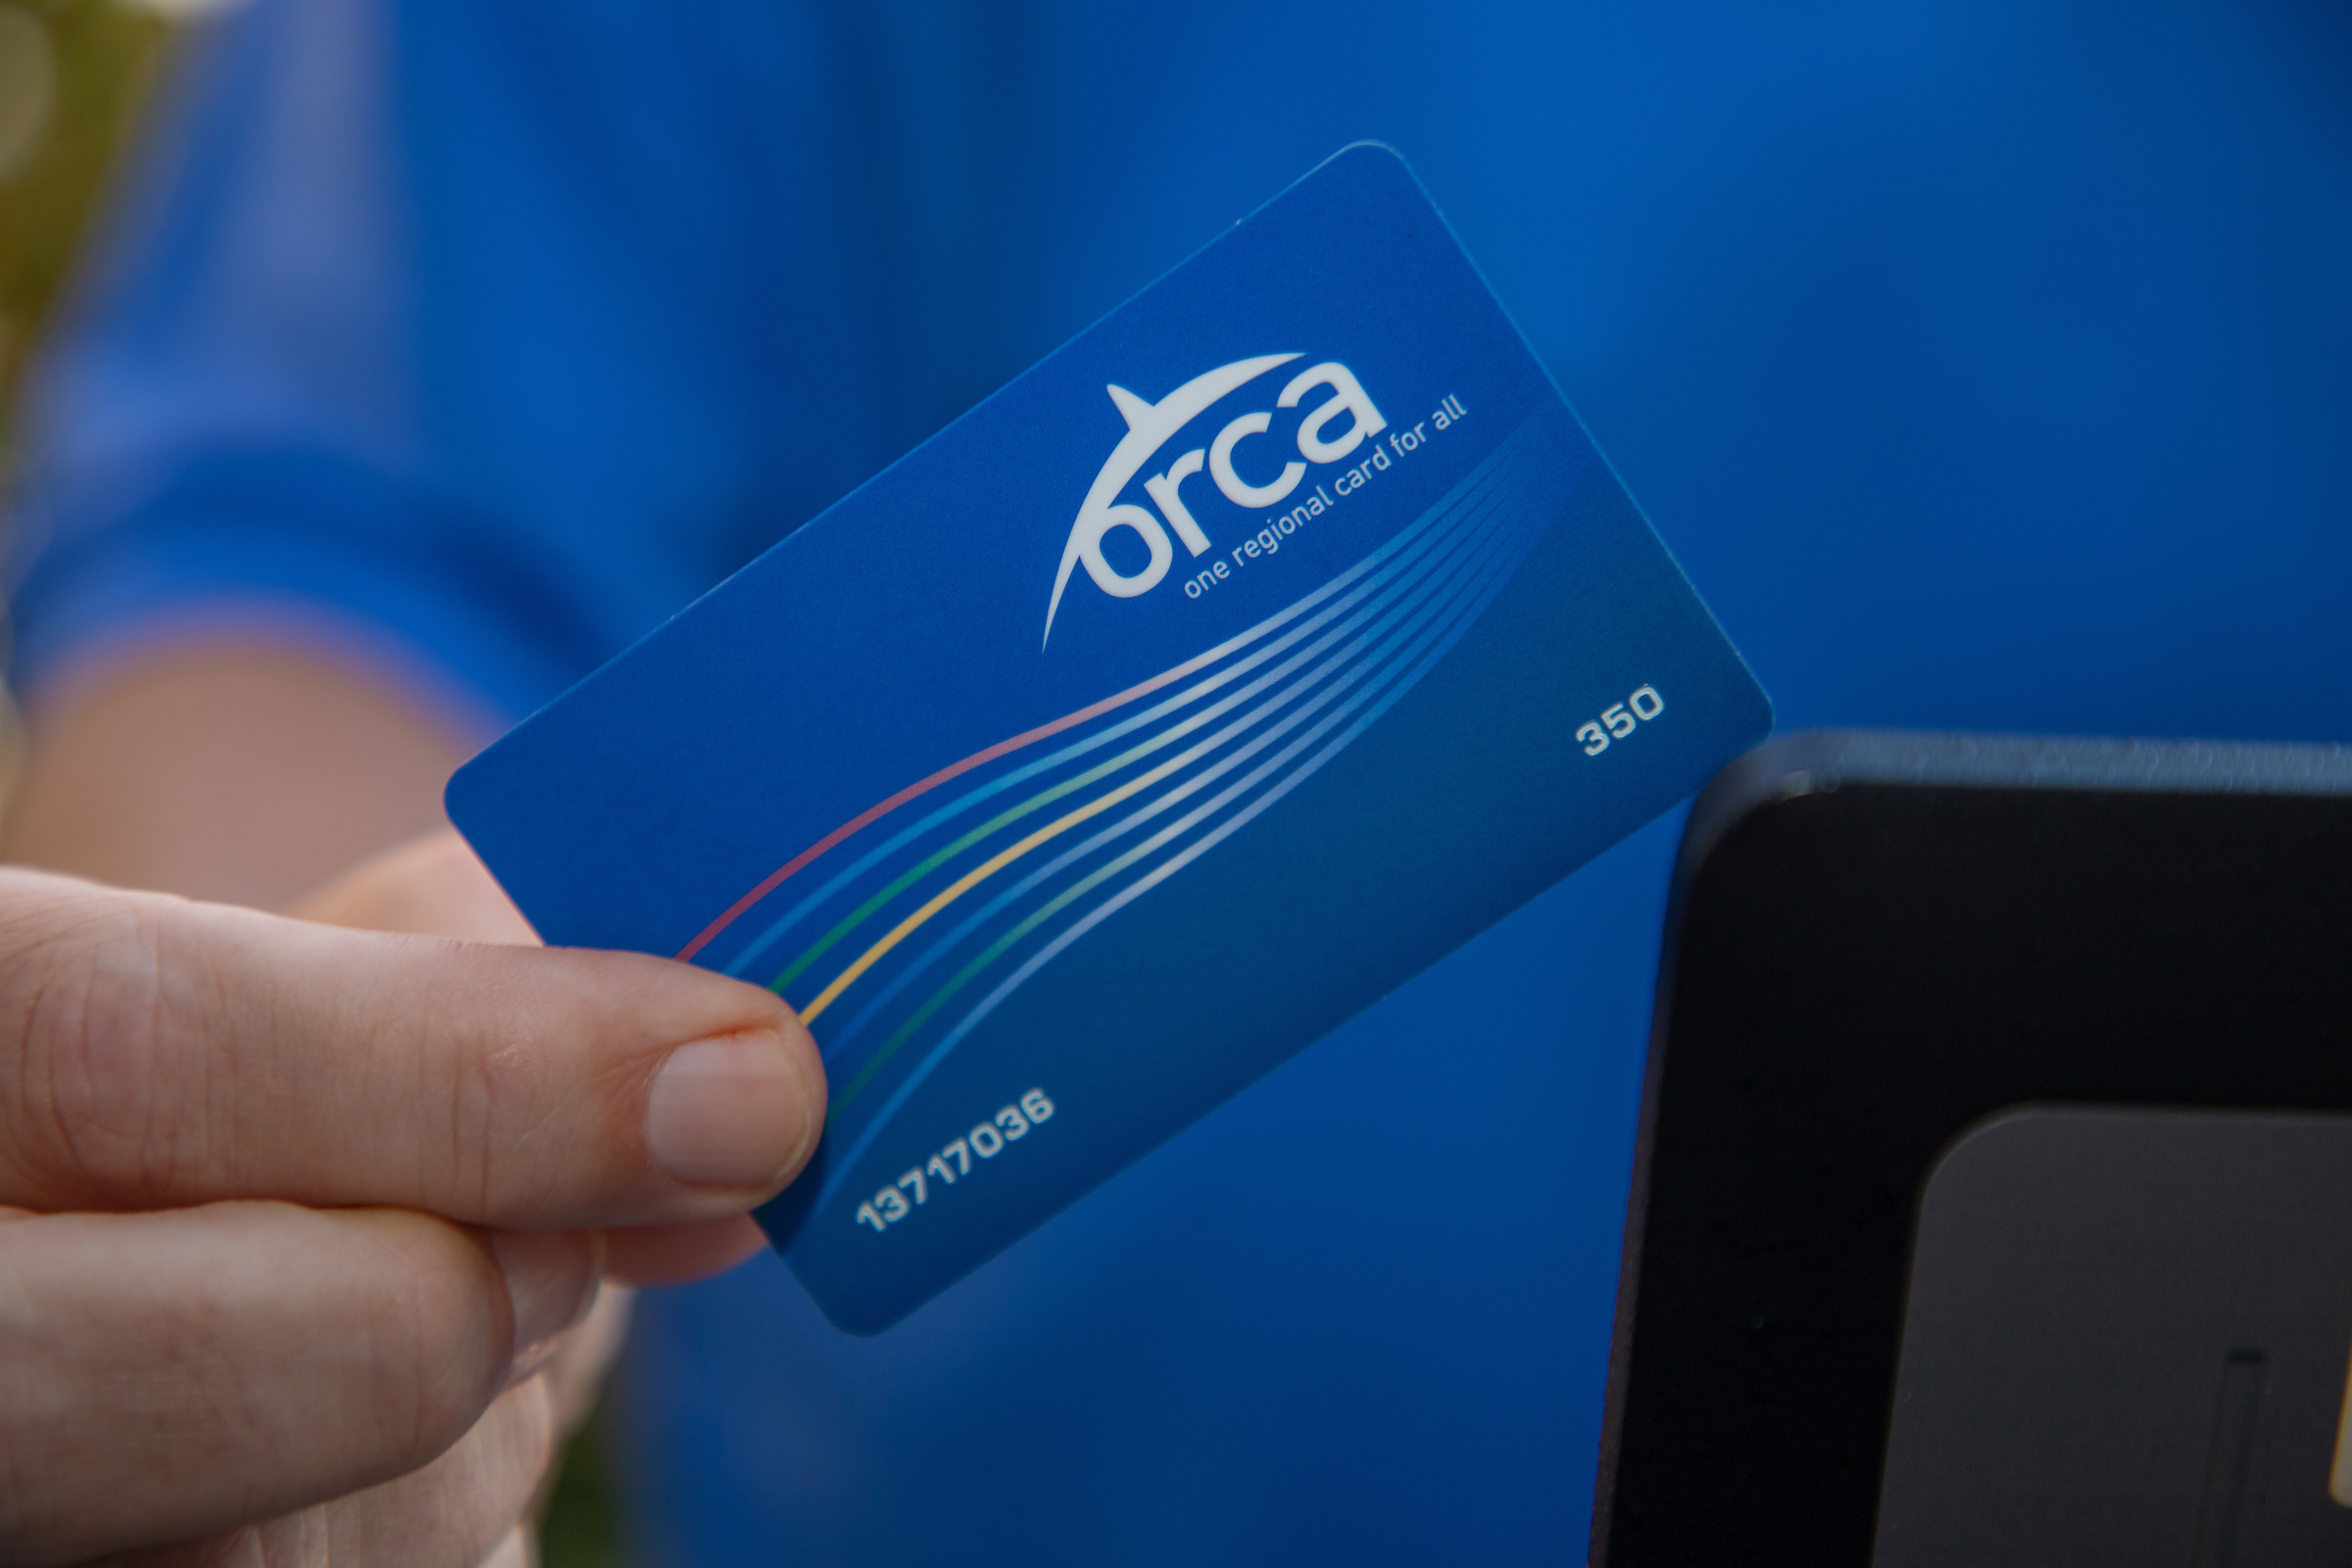 Metro orca card